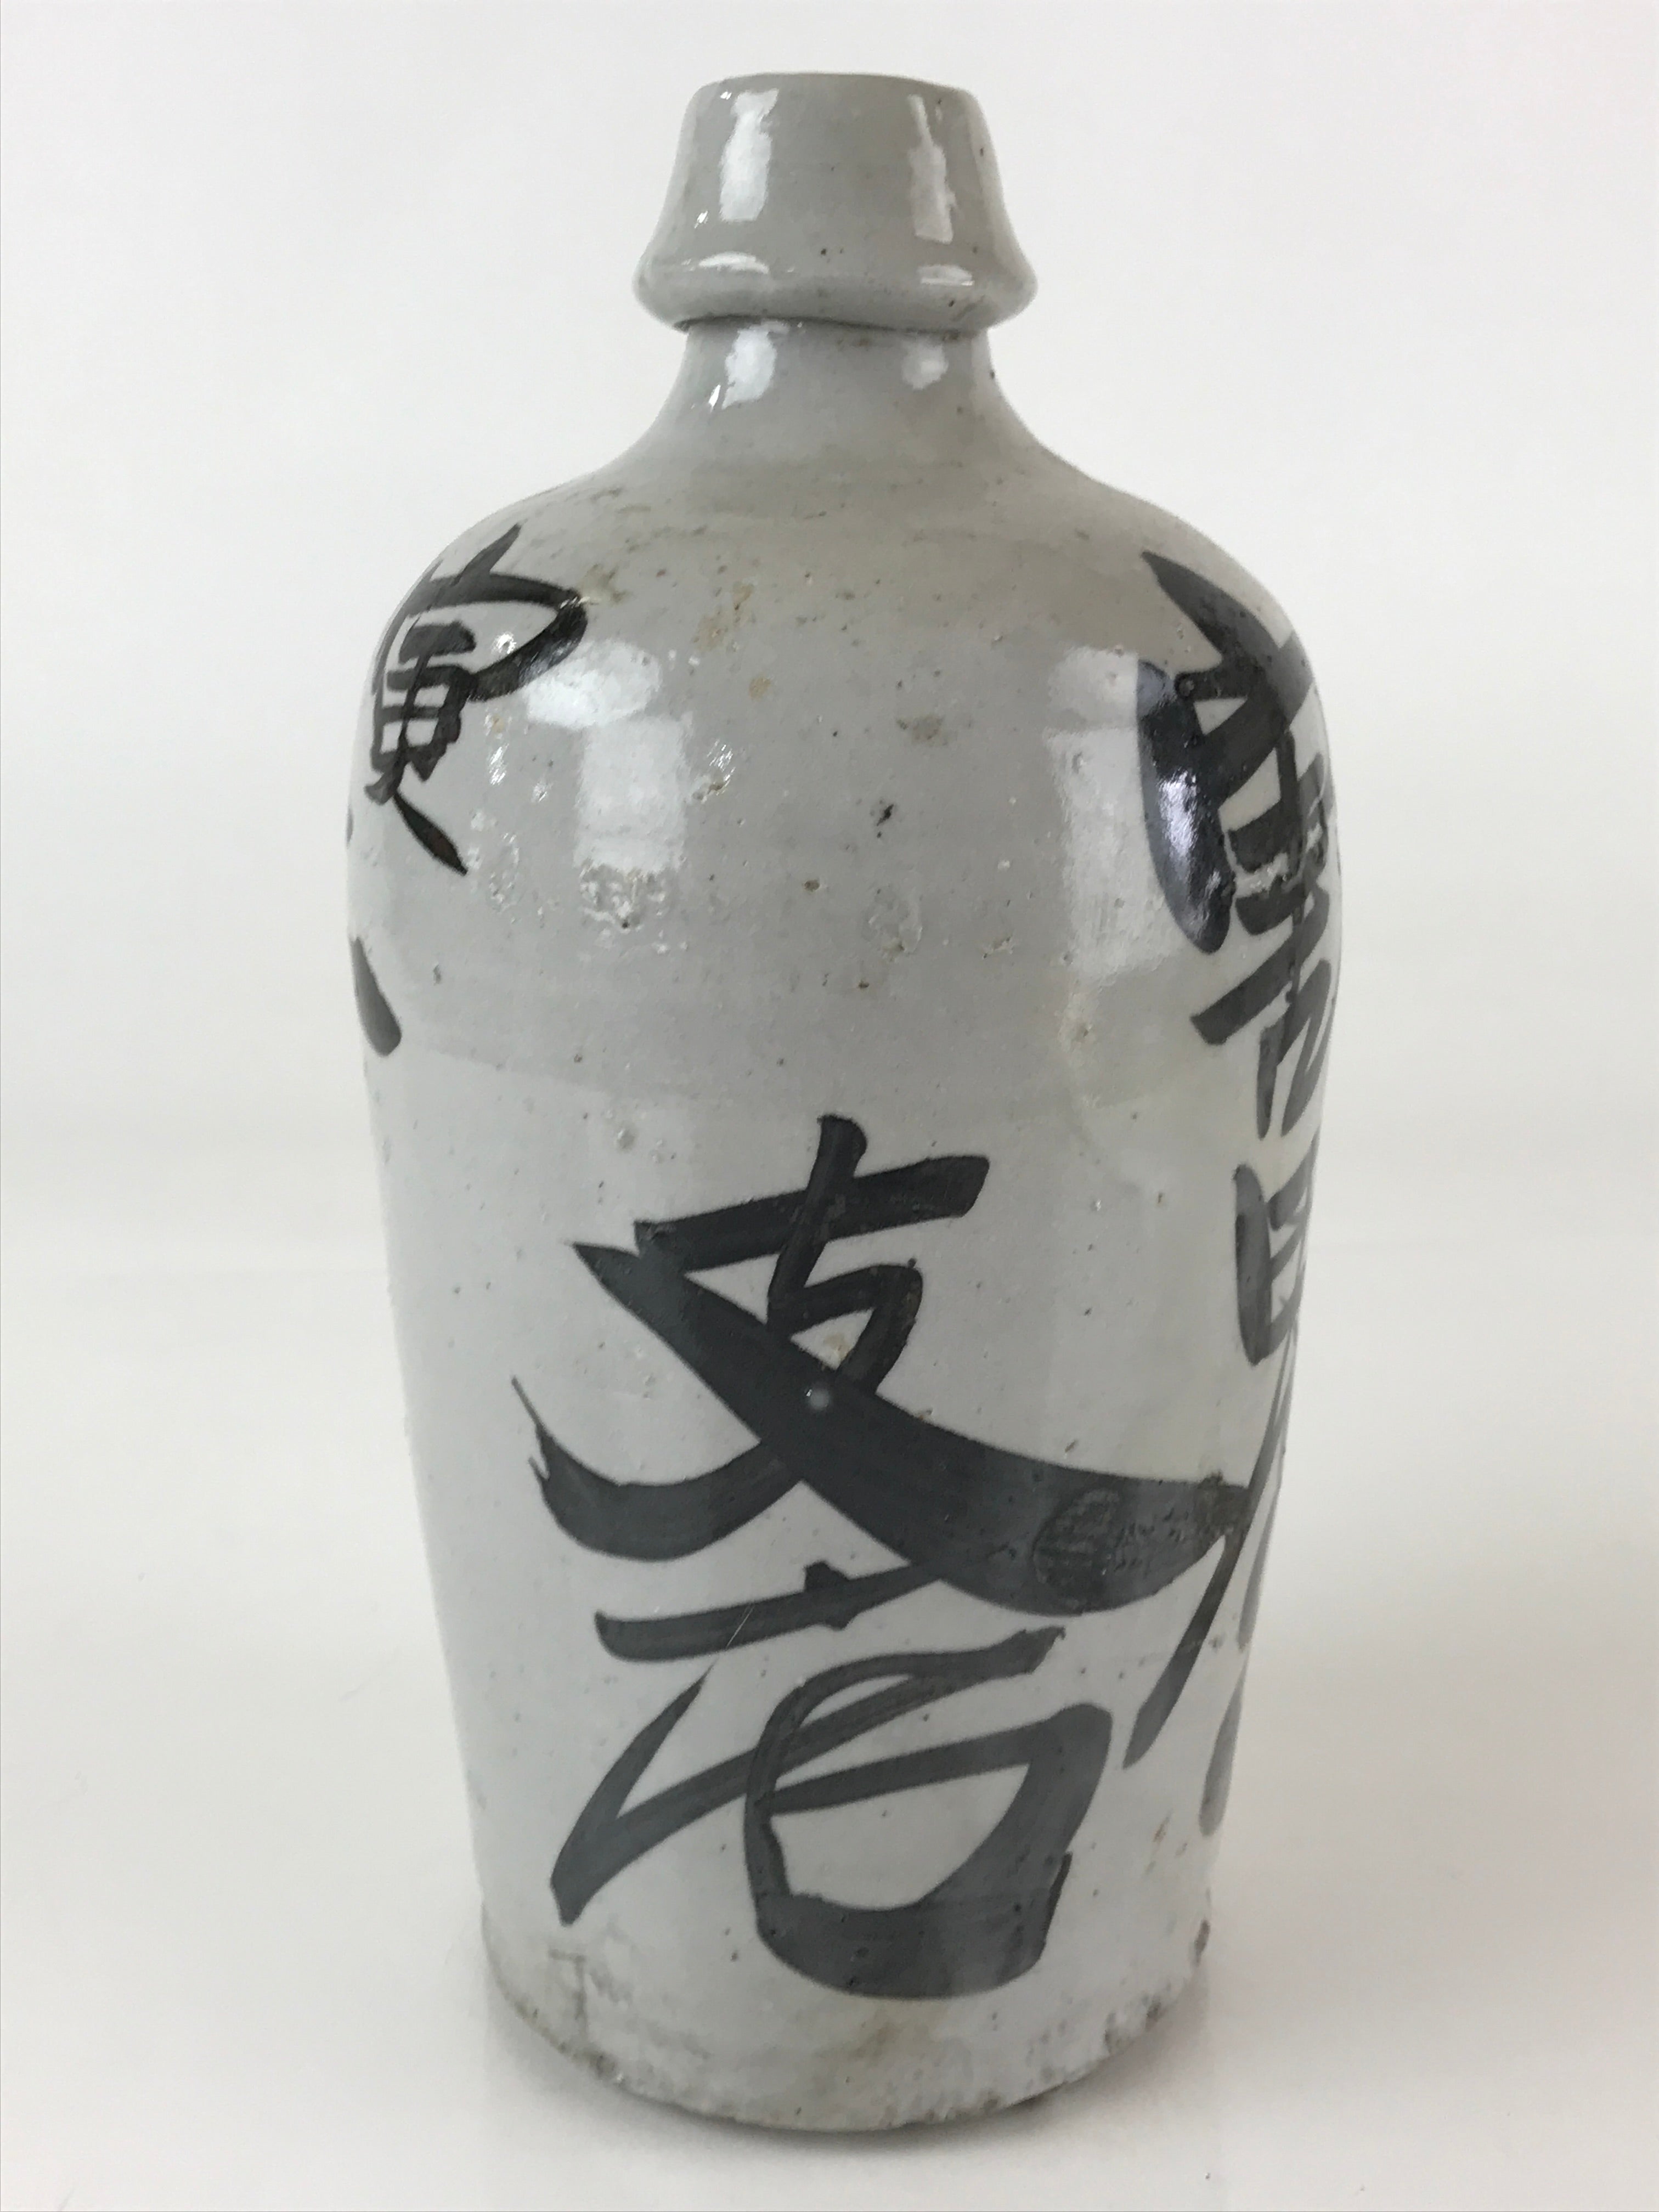 Japanese Ceramic Sake Bottle Tokkuri Vtg Pottery Gray Hand-Written Kanji TS484